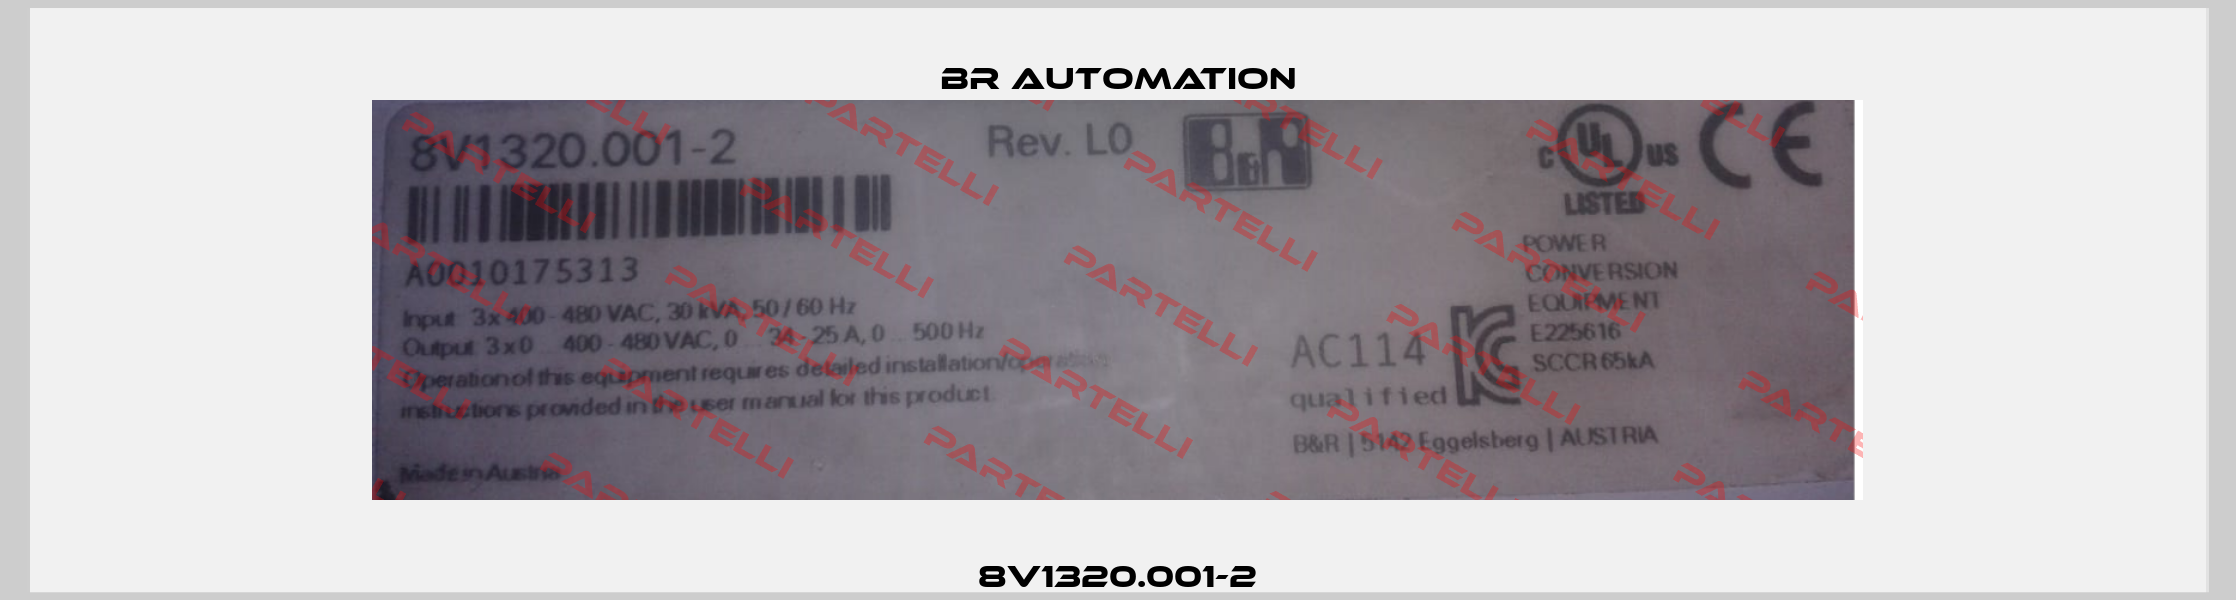 8V1320.001-2 Br Automation